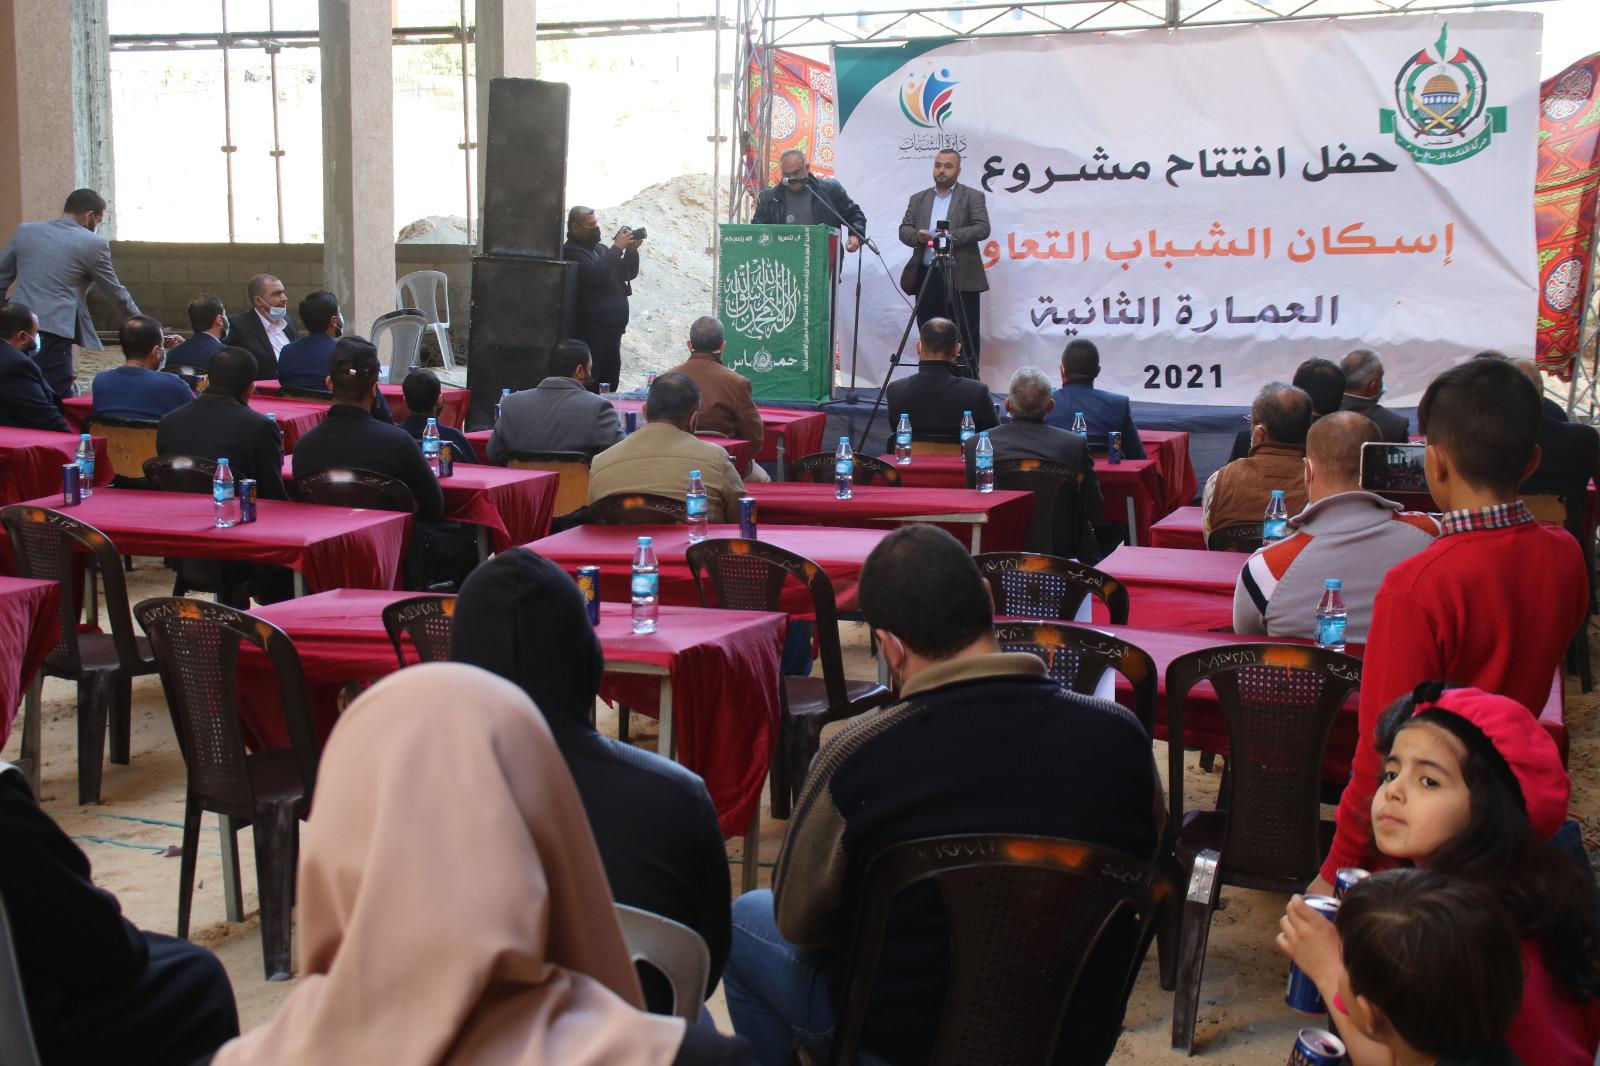 دائرة الشباب تحتفل بافتتاح البرج الثاني بمشرع إسكان الشباب بغزة